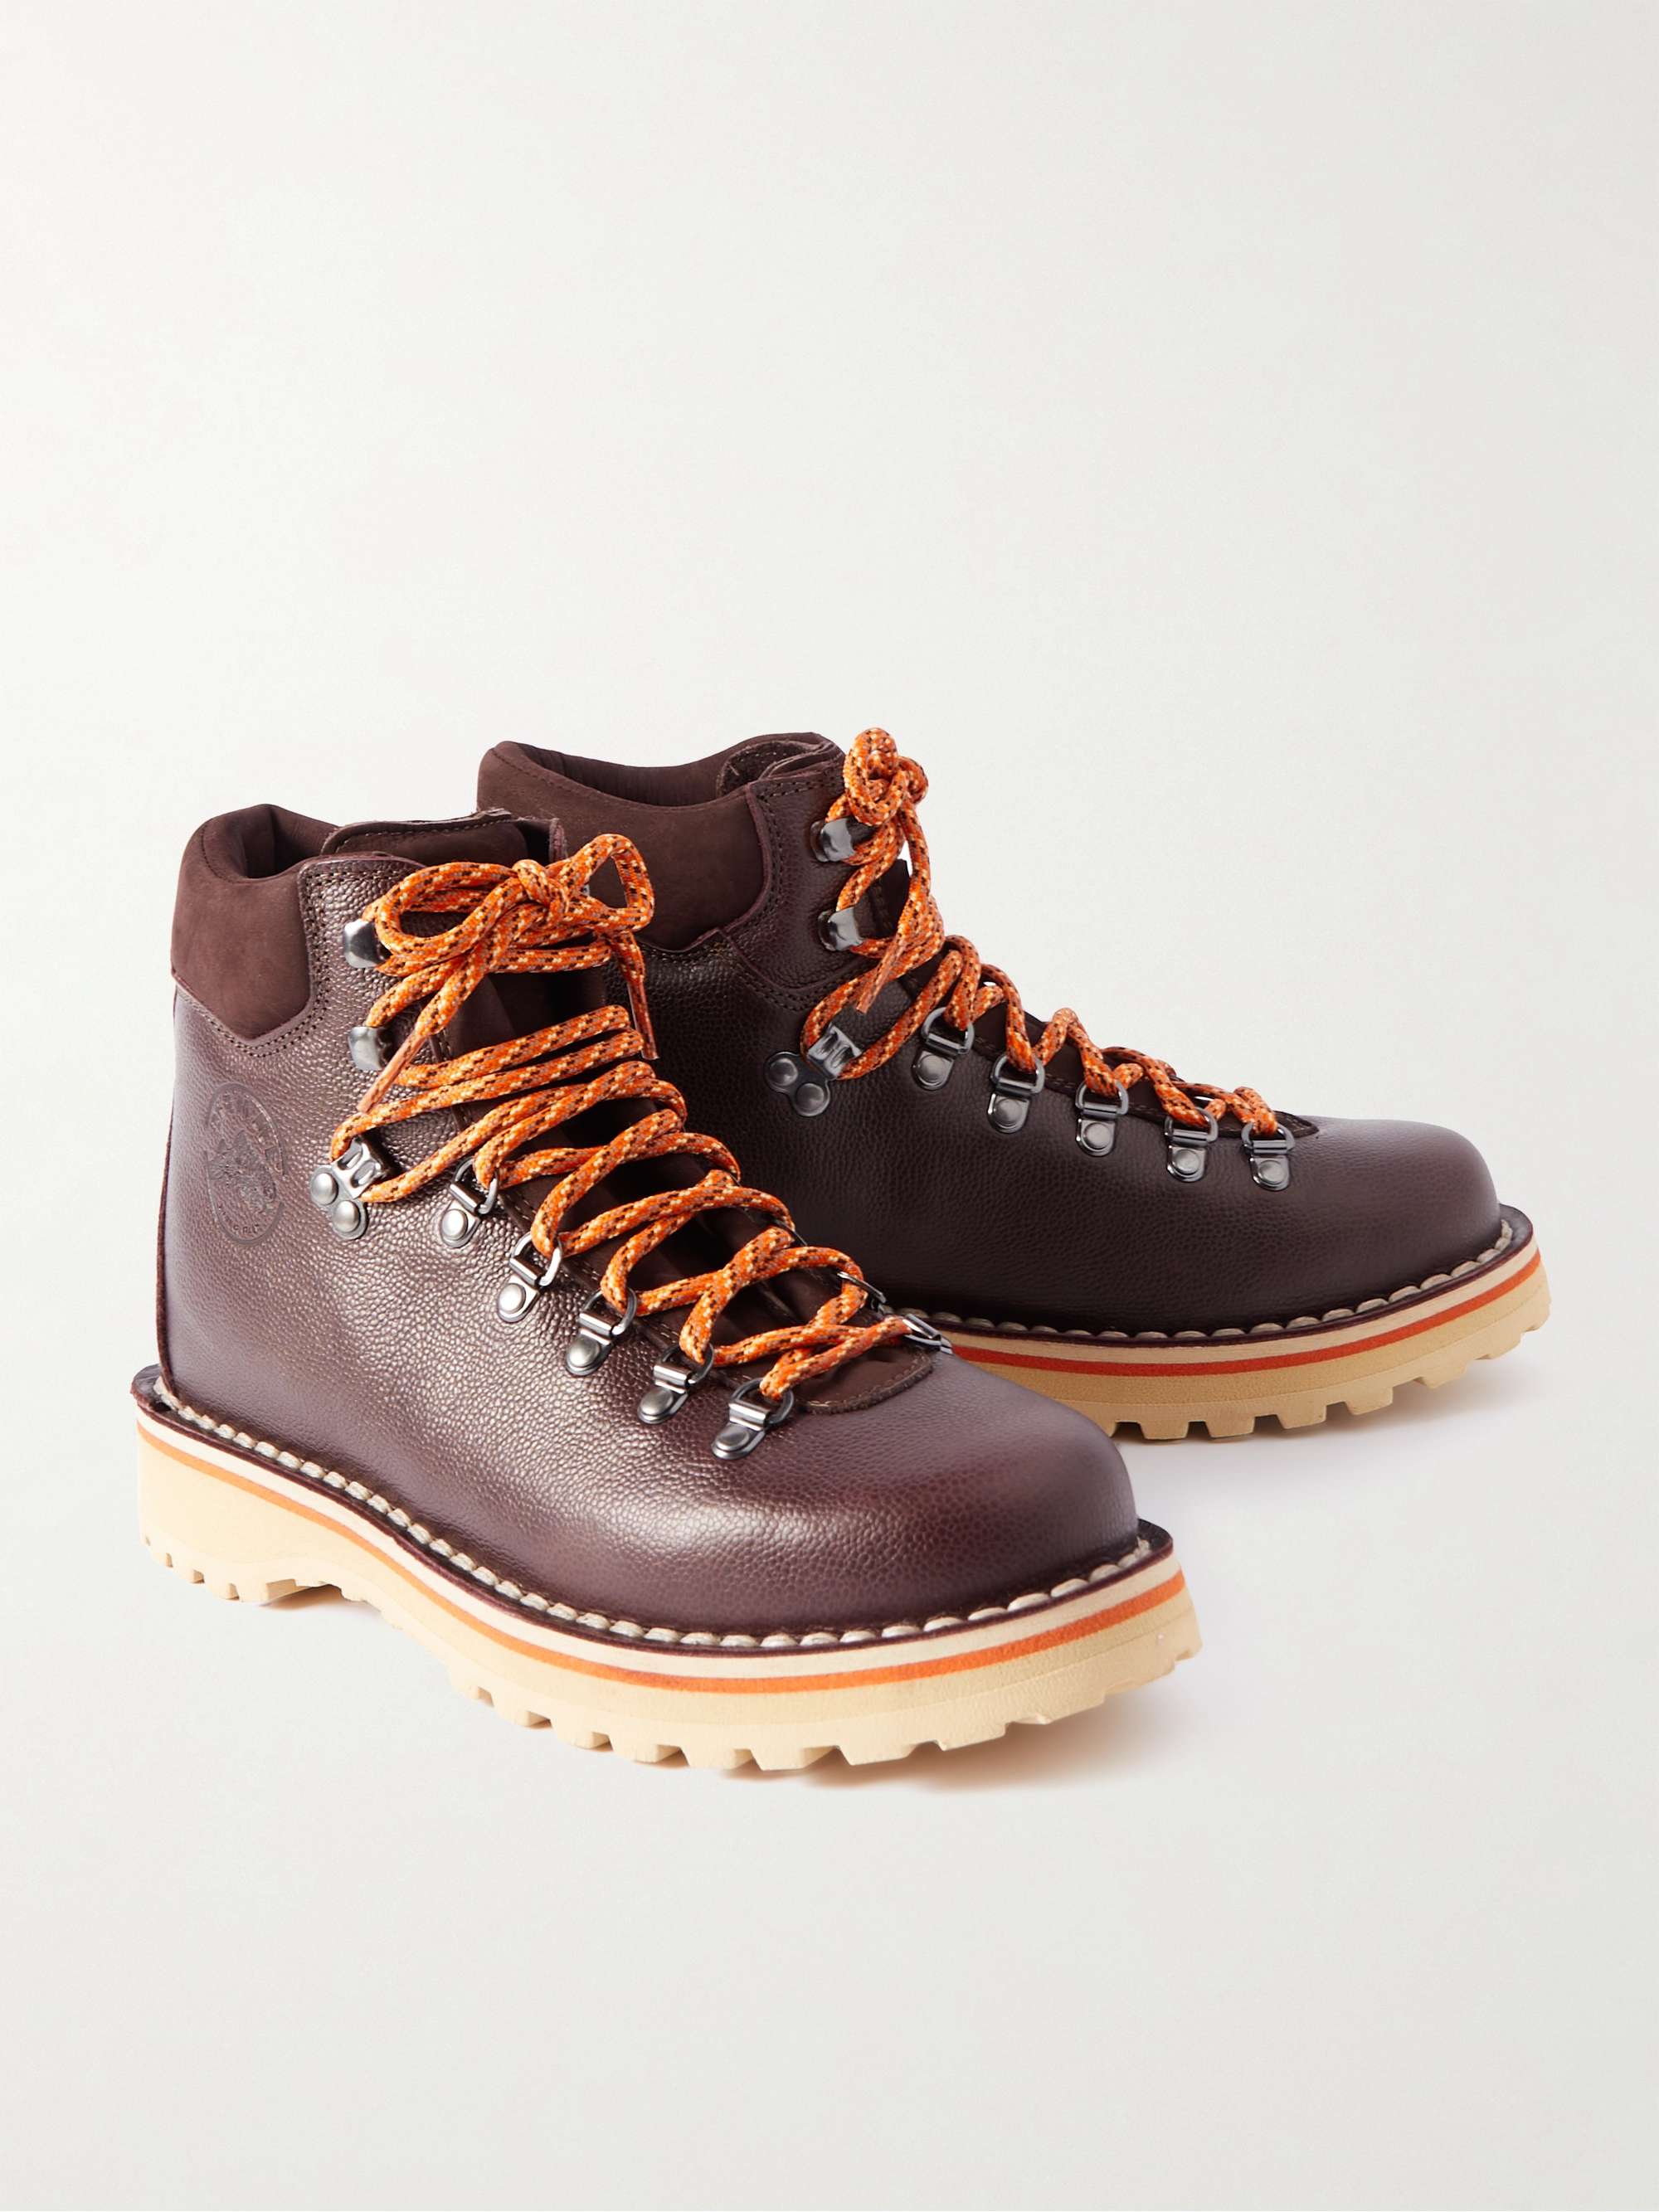 MR P. + Diemme Roccia Vet Full-Grain Leather Hiking Boots for Men | MR ...